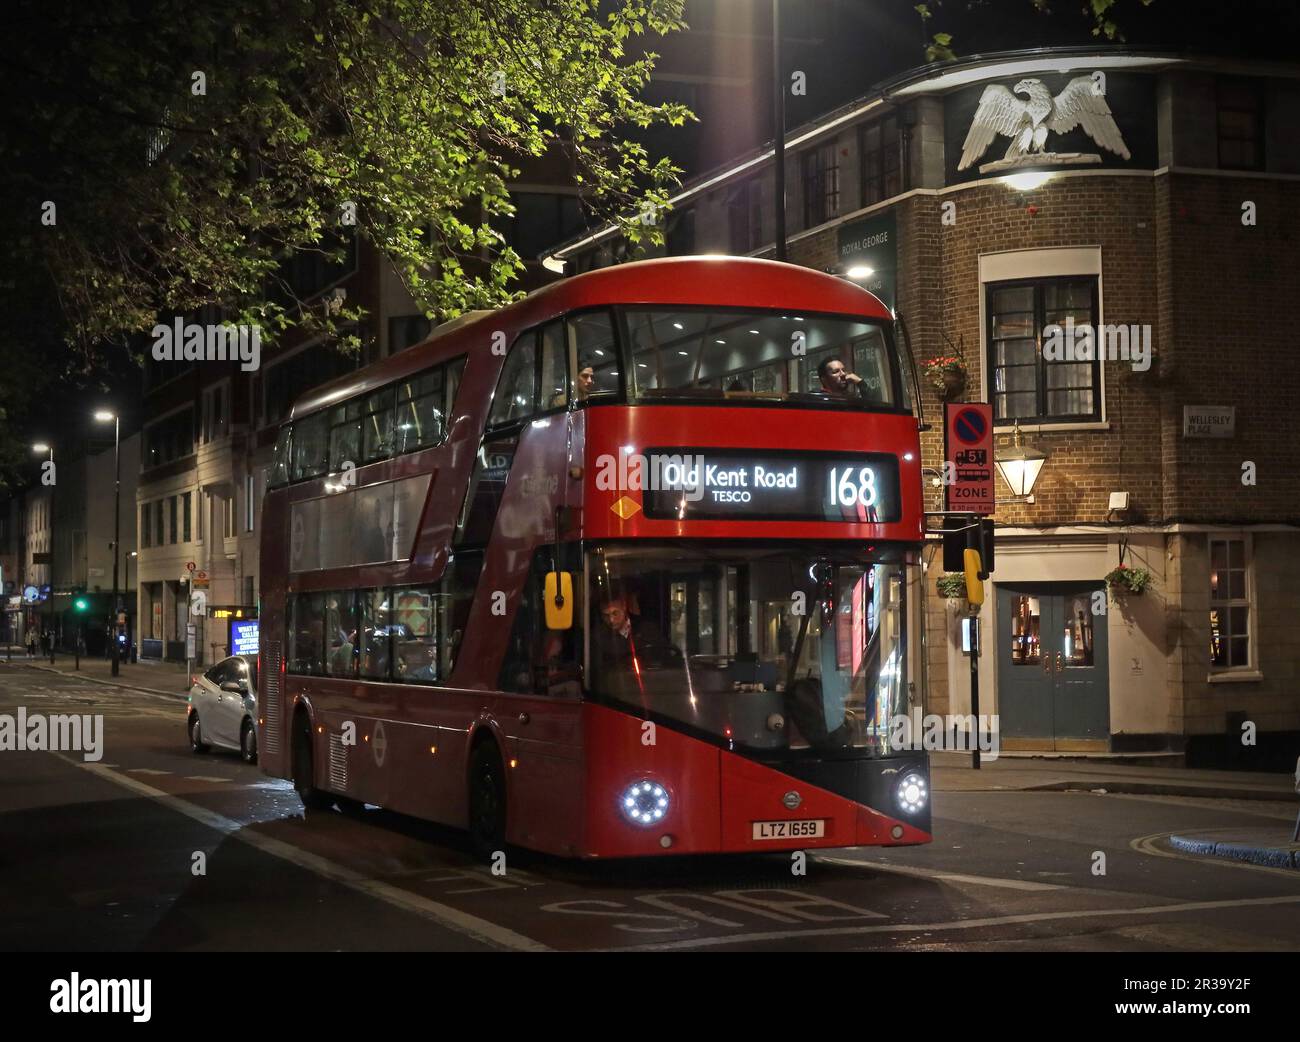 Un nouveau bus Routemaster rouge, en fin de soirée 168, à Old Kent Road, sur Eversholt Street, Camden, Londres, Angleterre, ROYAUME-UNI, NW1 1DG Banque D'Images